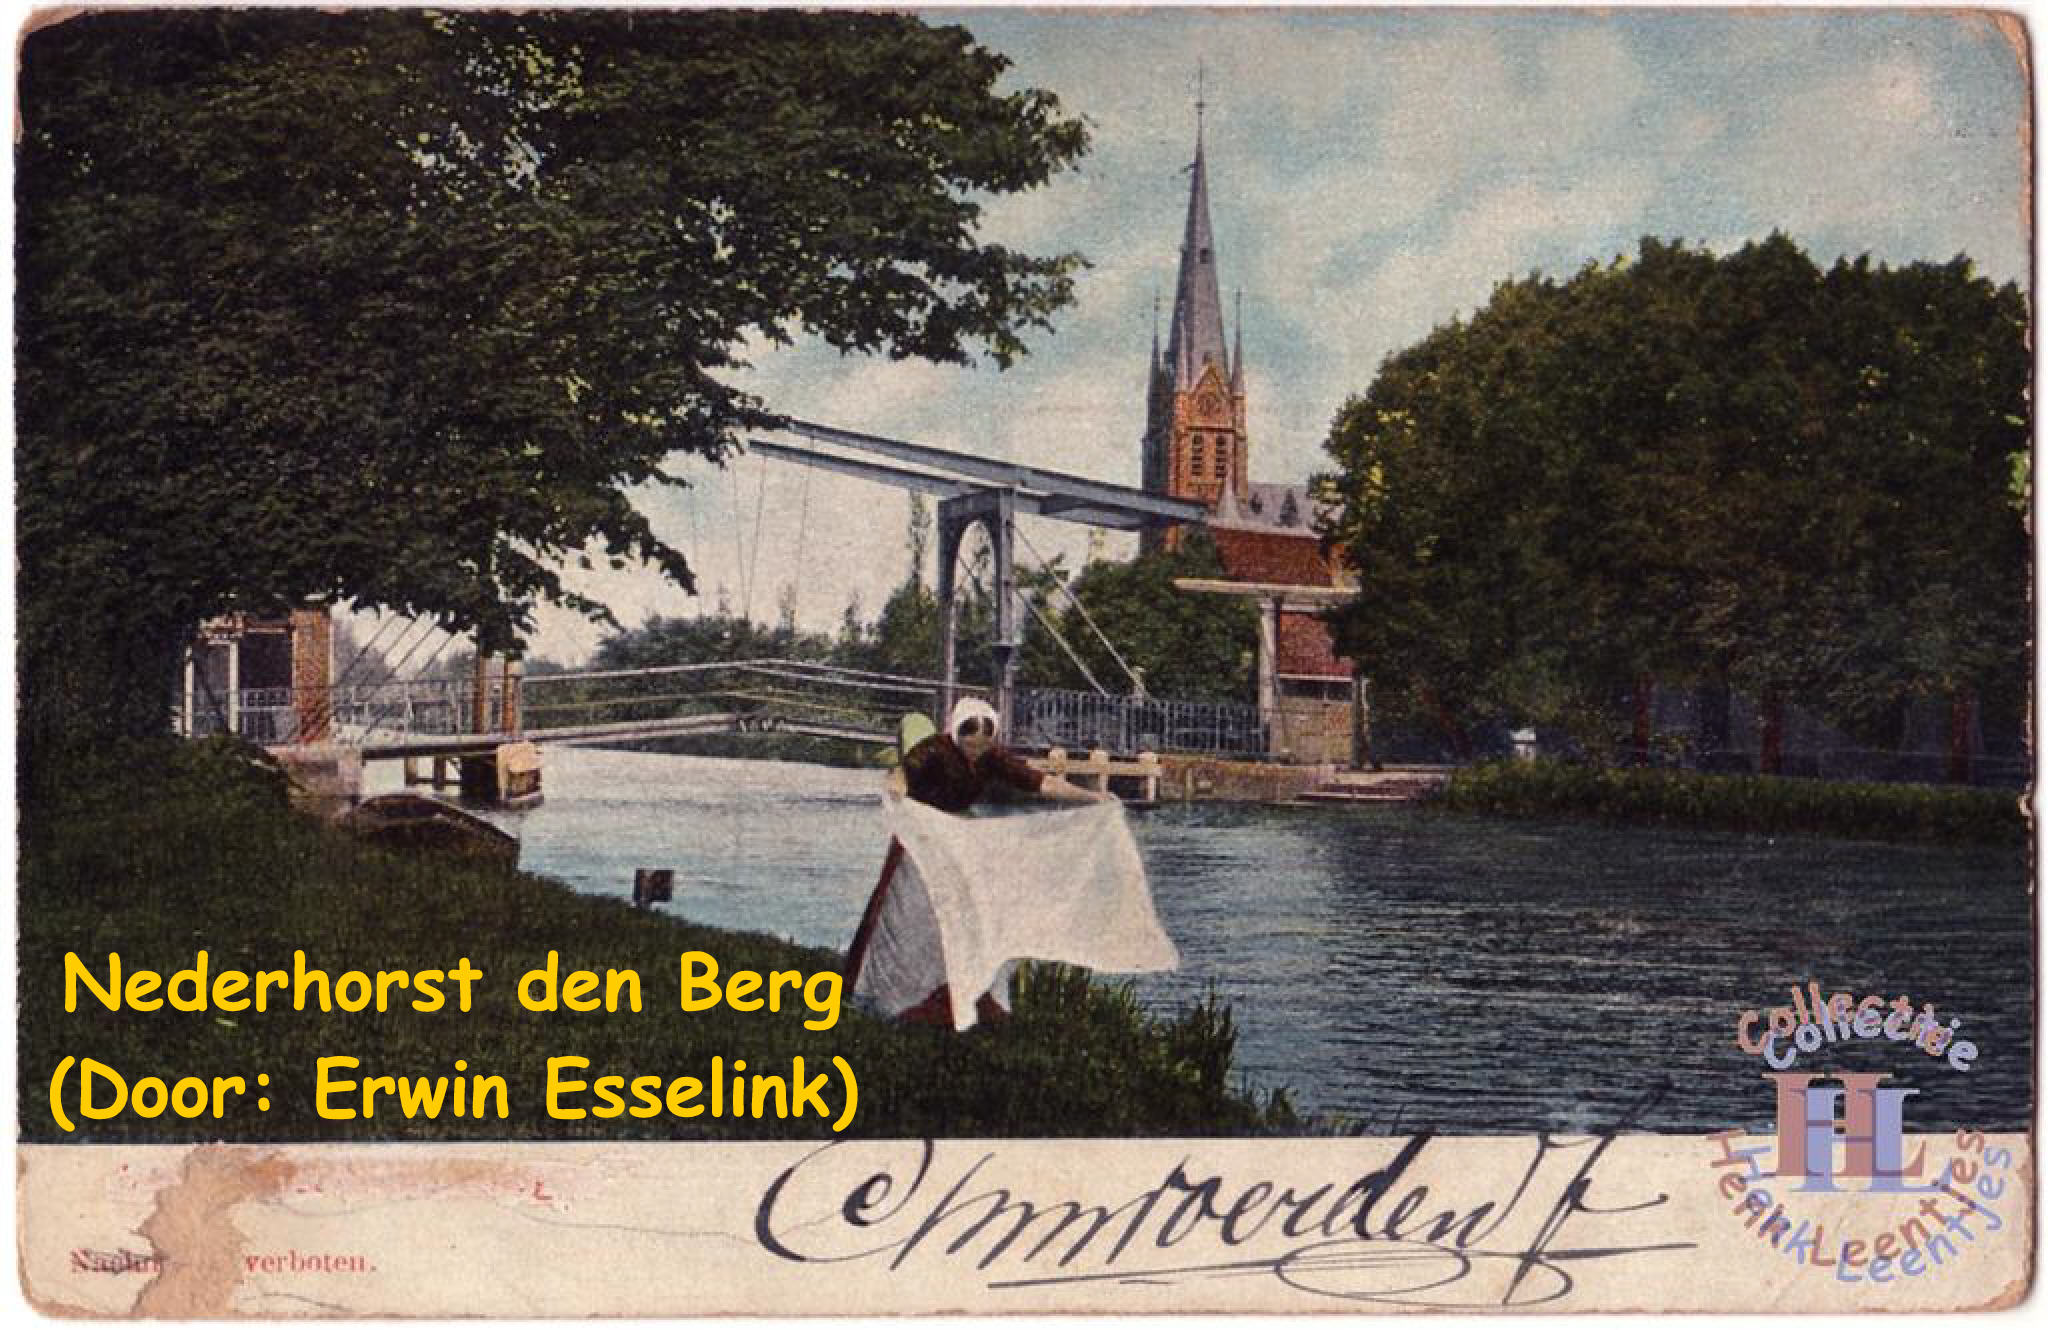 Nederhorst den Berg (Door: Erwin Esselink)